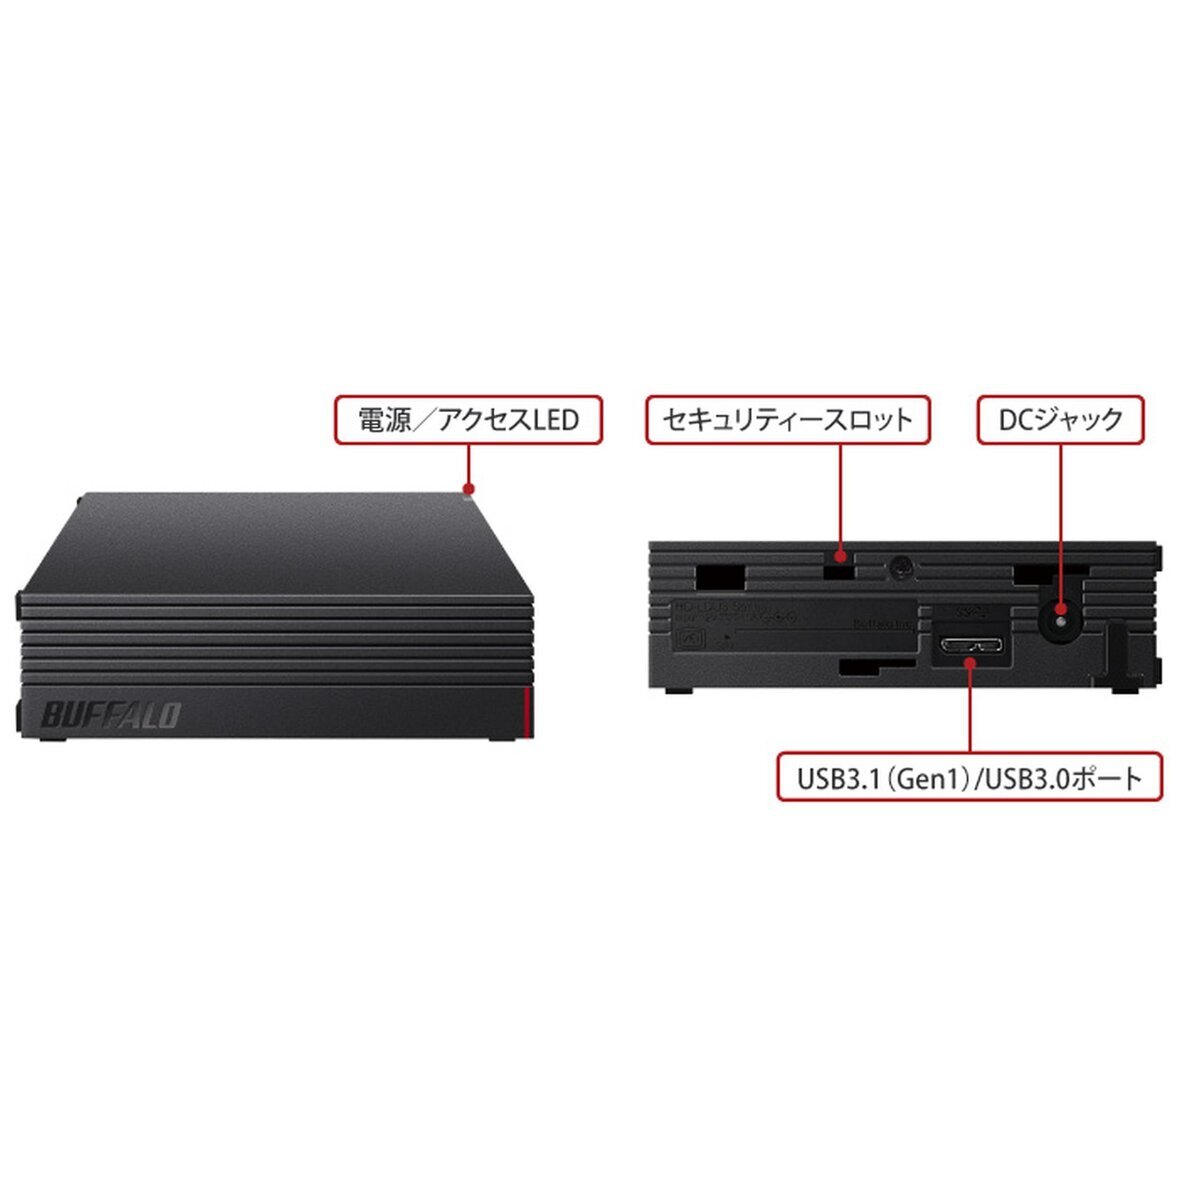 Buffalo 外付けHDD 4TB HD-NRLD4.0U3-BA | Costco Japan